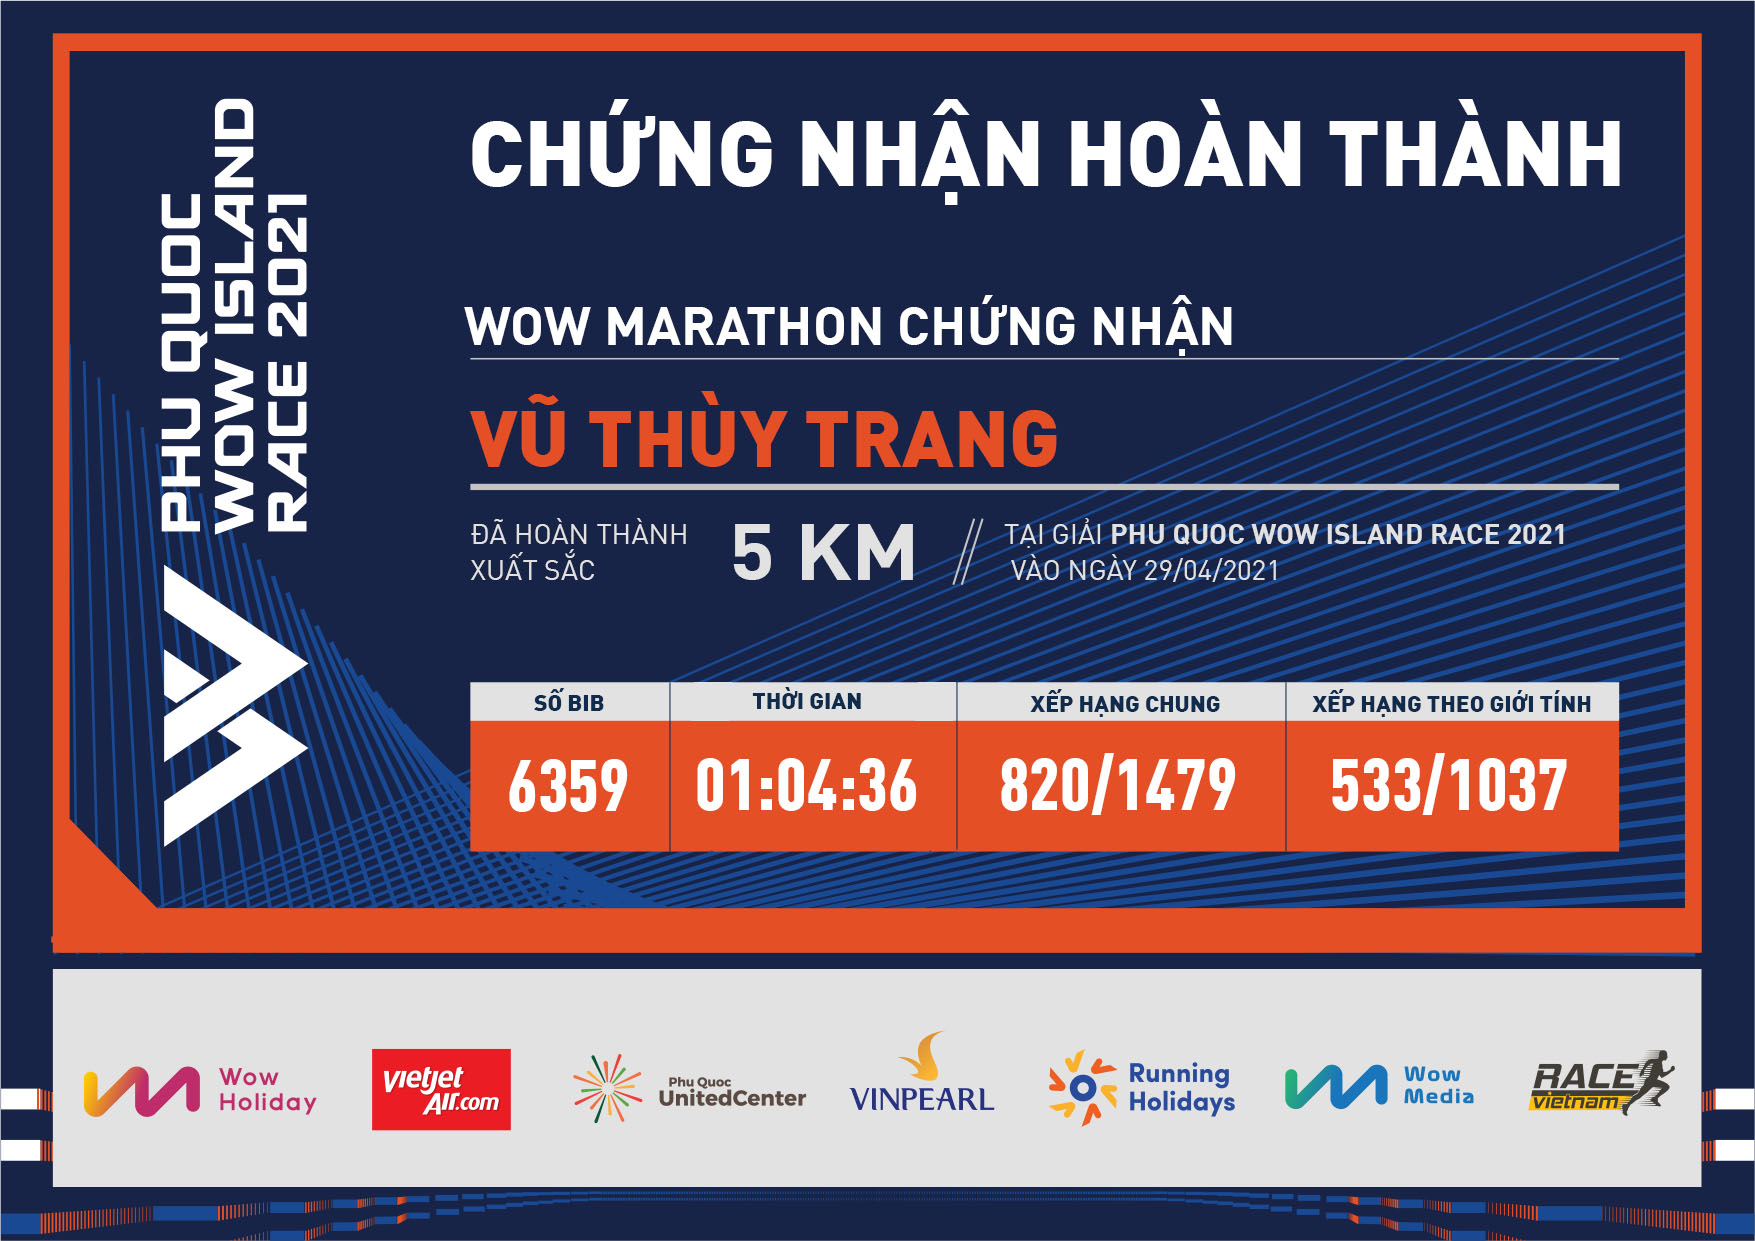 6359 - Vũ Thùy Trang